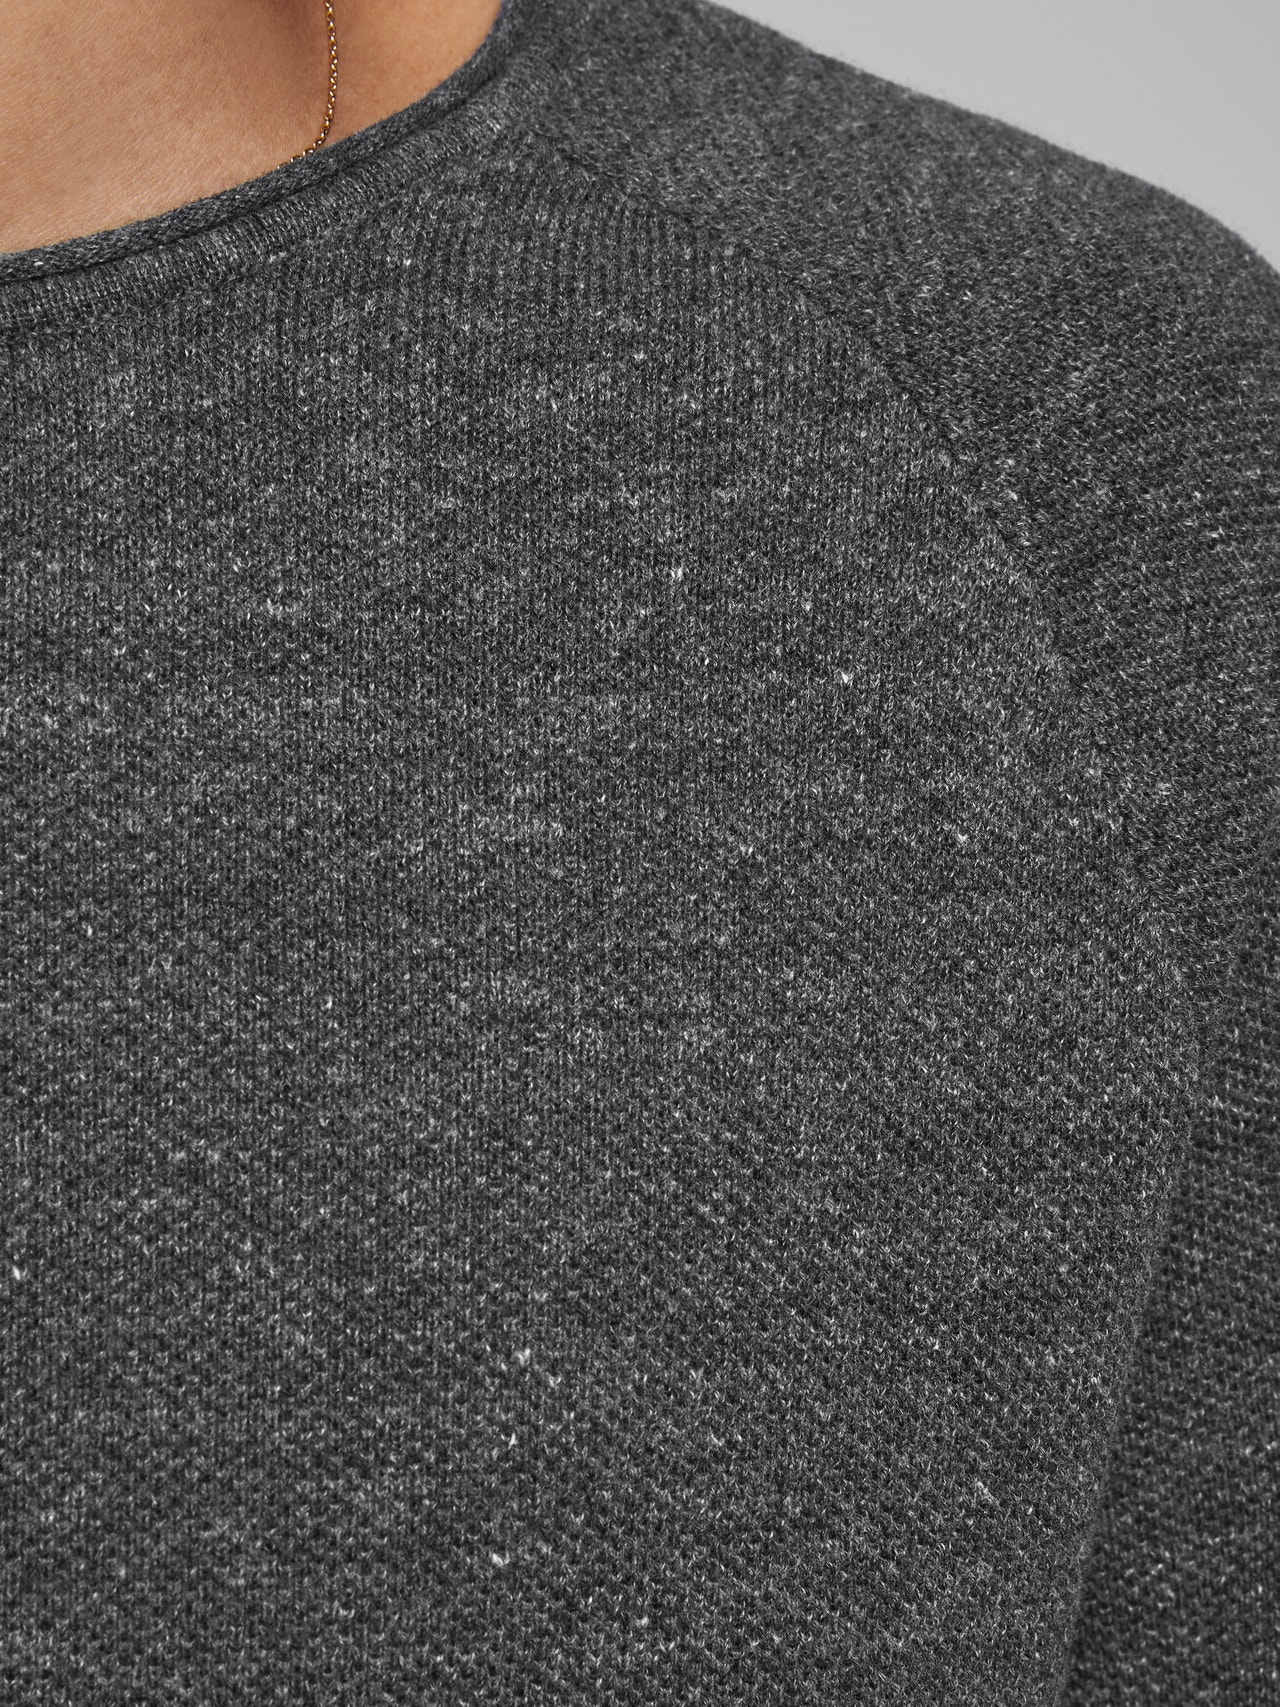 Jack & Jones Ensfarvet Striktrøje med rund hals -Dark Grey Melange - 12157321